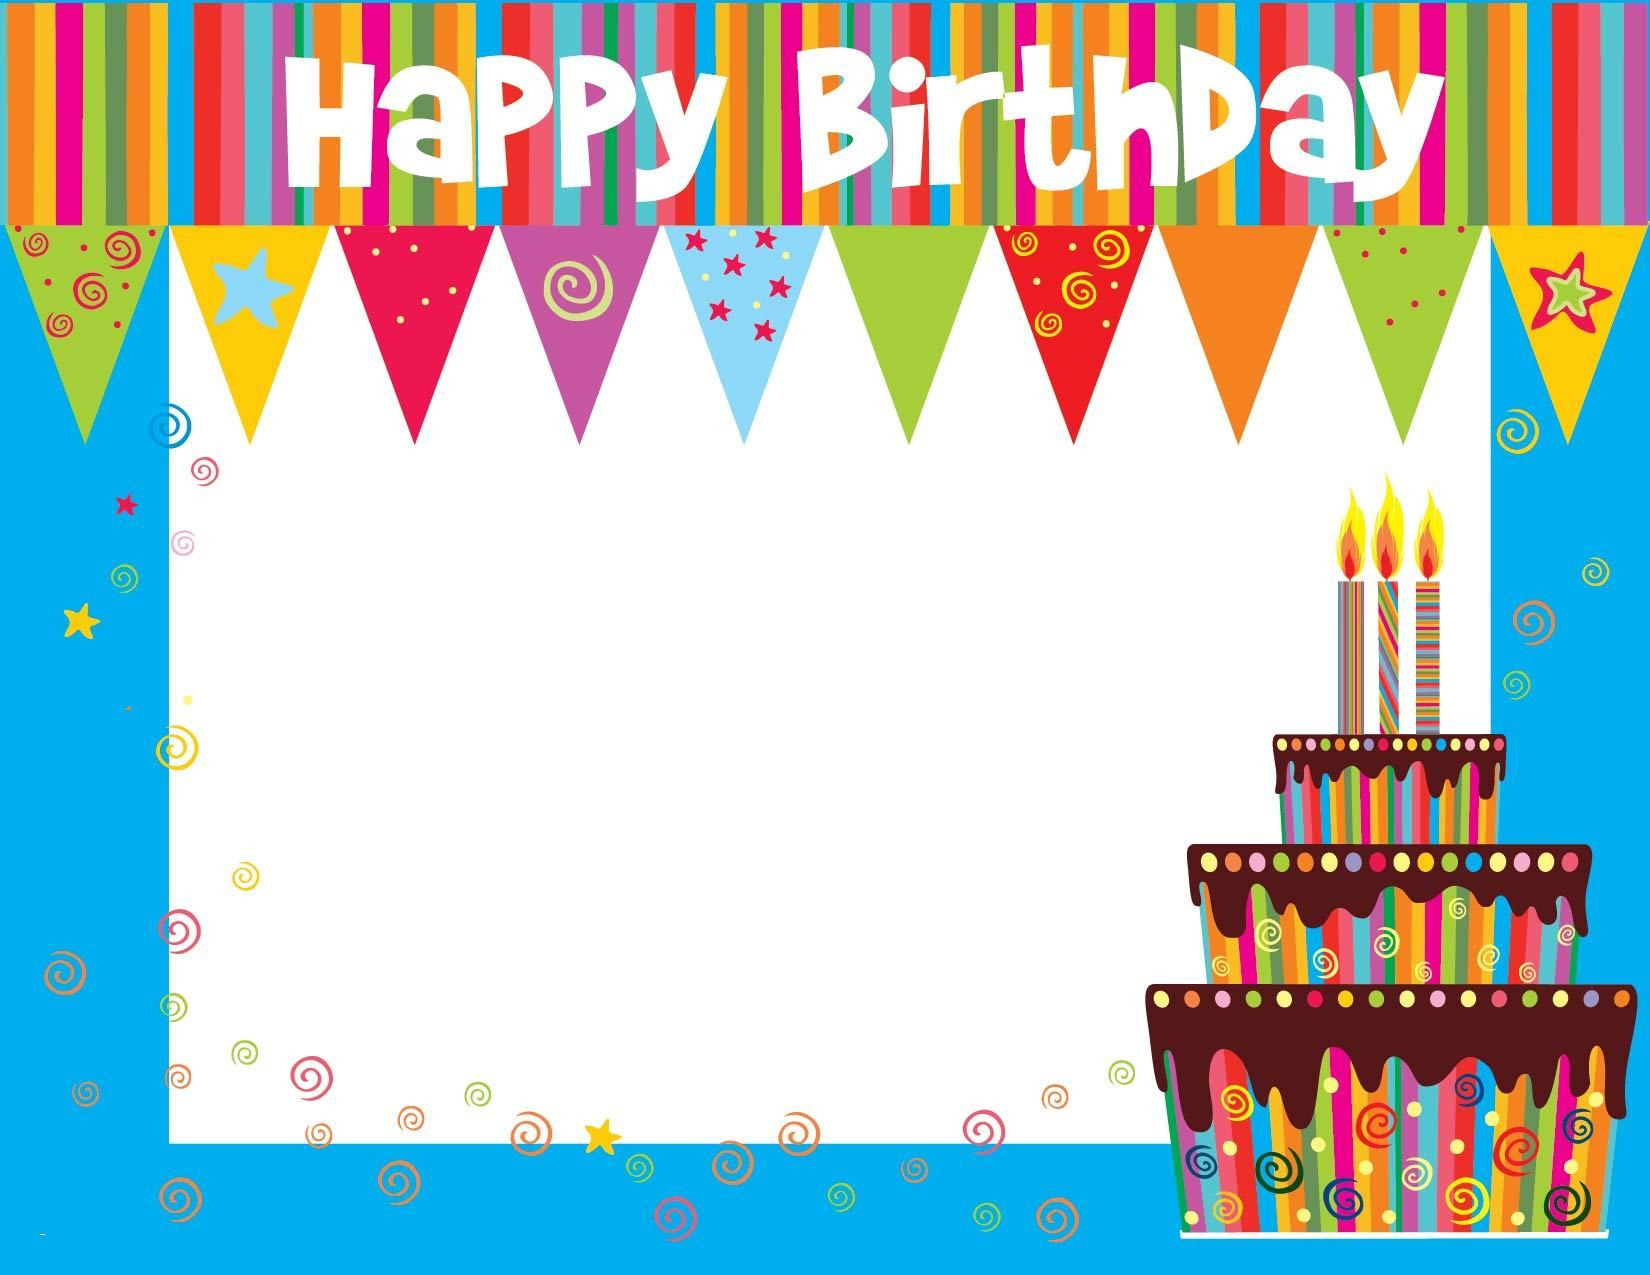 Birthday Card Template | Birthday Calendar Template | Birthday Card - Free Online Printable Birthday Cards